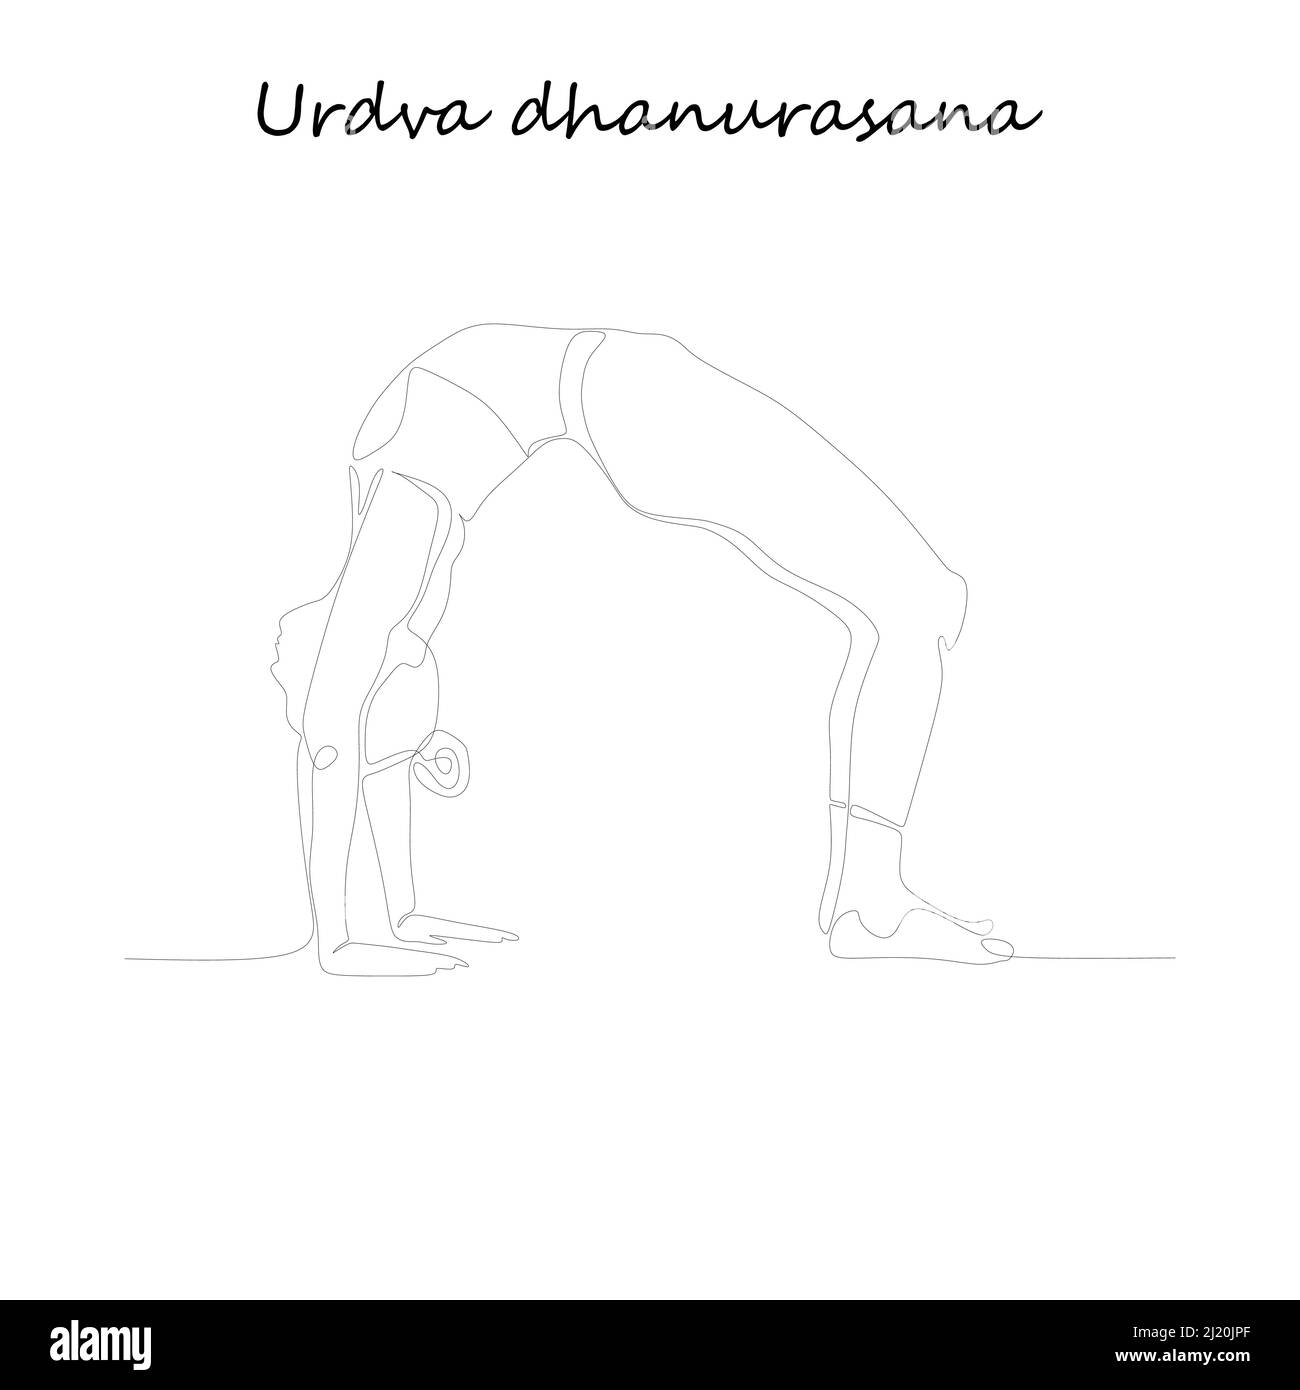 Mise en plan de ligne continue. Jeune femme faisant de l'exercice de yoga, image de silhouette. Illustration uniligne en noir et blanc. Urdva dhanurasana Illustration de Vecteur